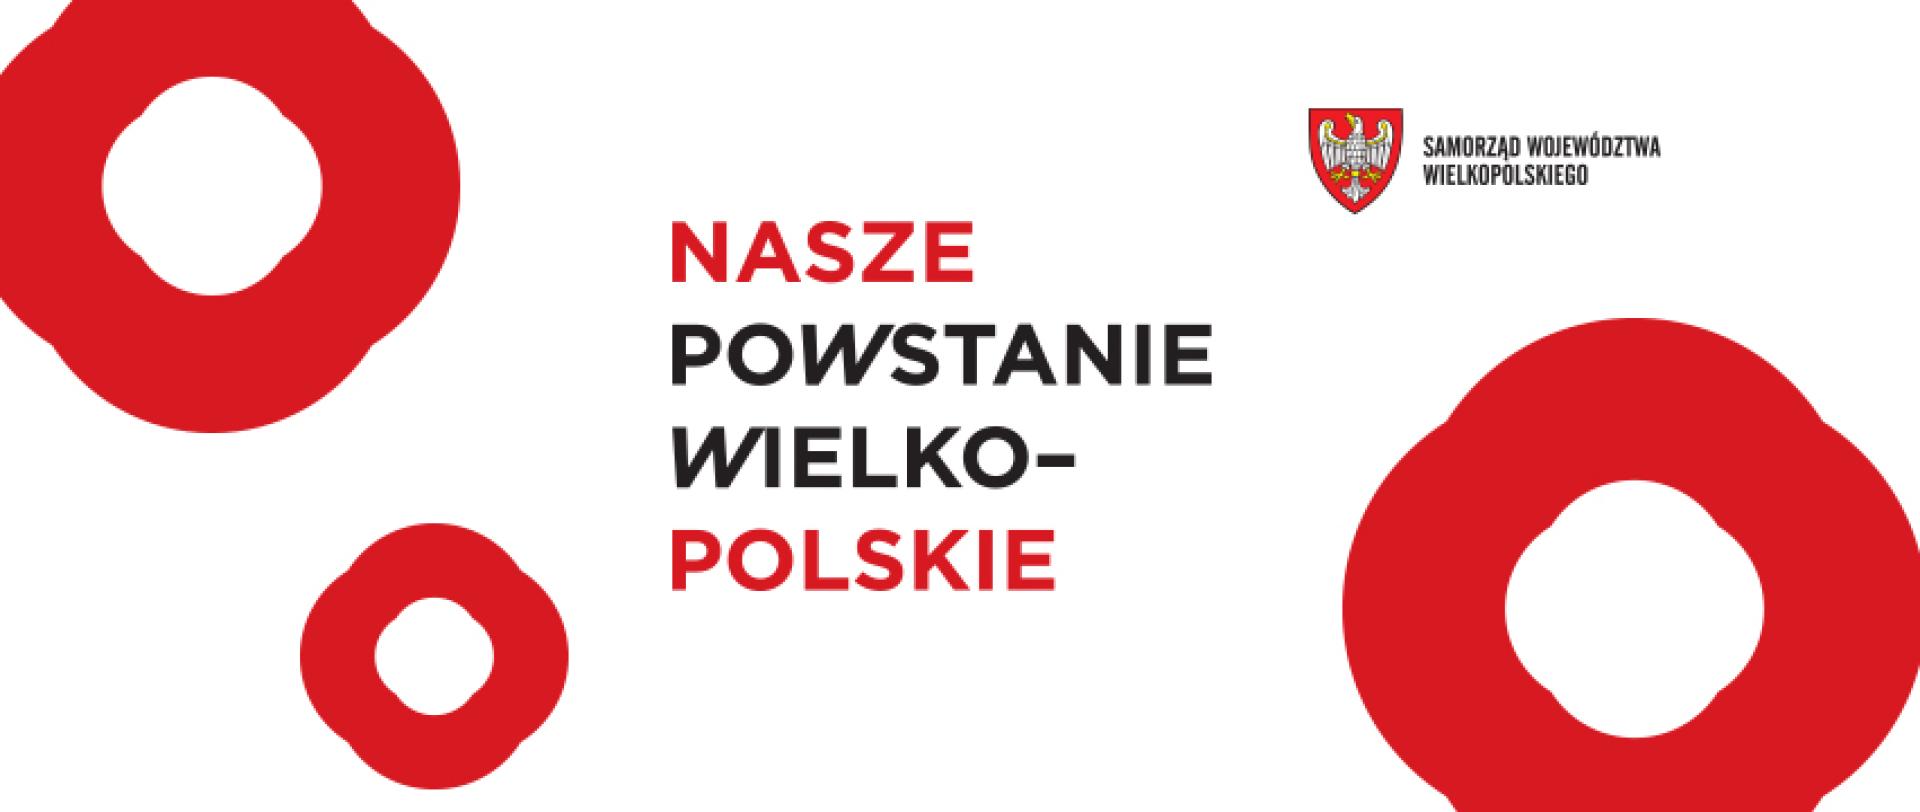  Powstanie Wielkopolskie po raz pierwszy świętem wszystkich Polaków! - zobacz więcej